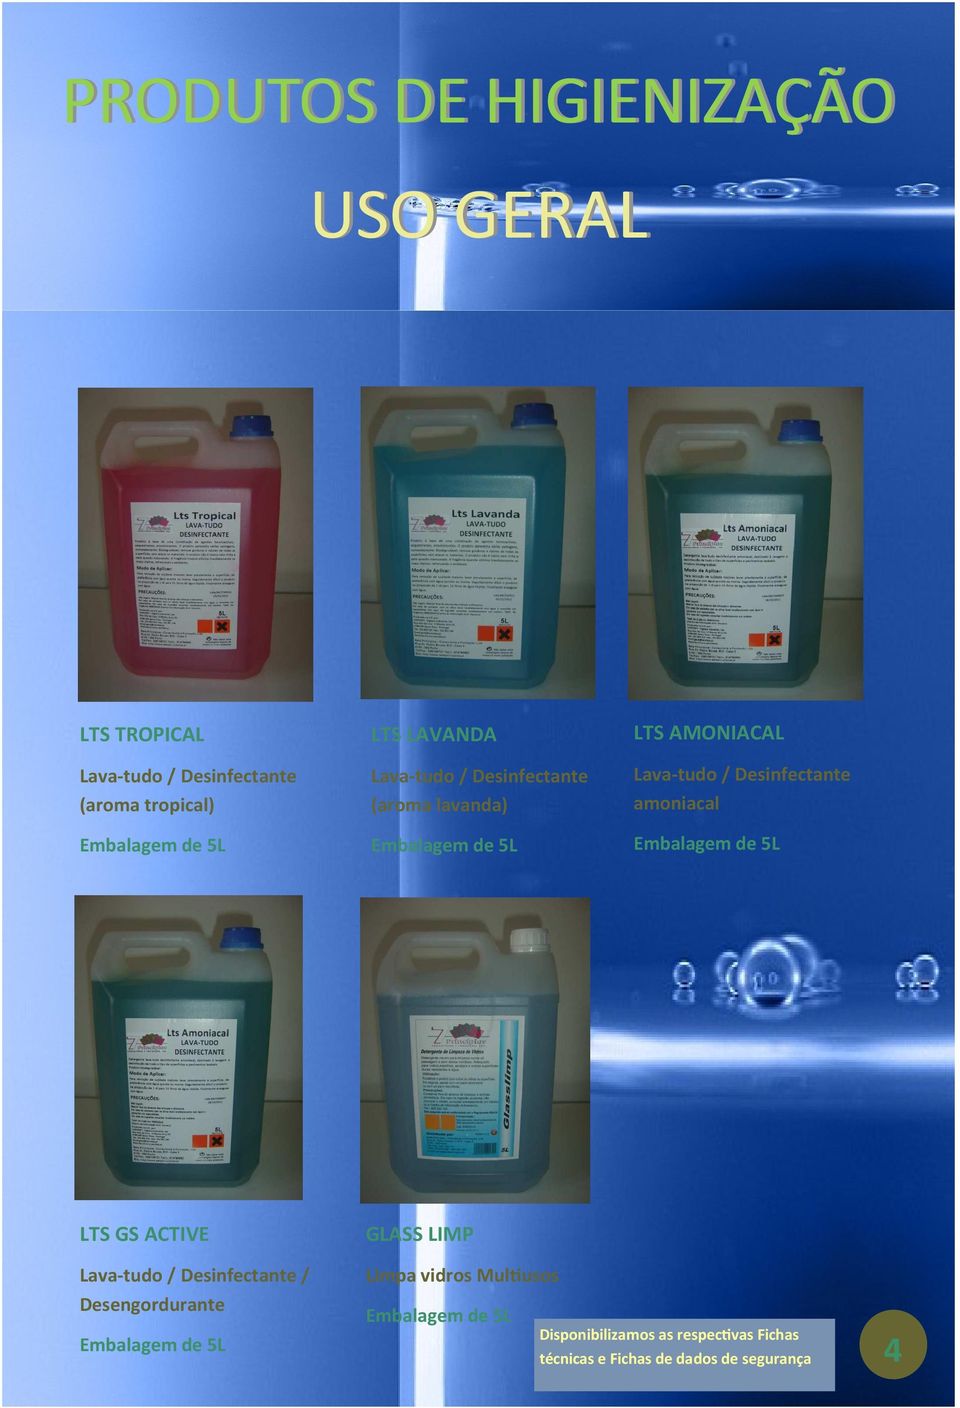 Desinfectante amoniacal LTS GS ACTIVE GLASS LIMP Lava-tudo / Desinfectante / Limpa vidros